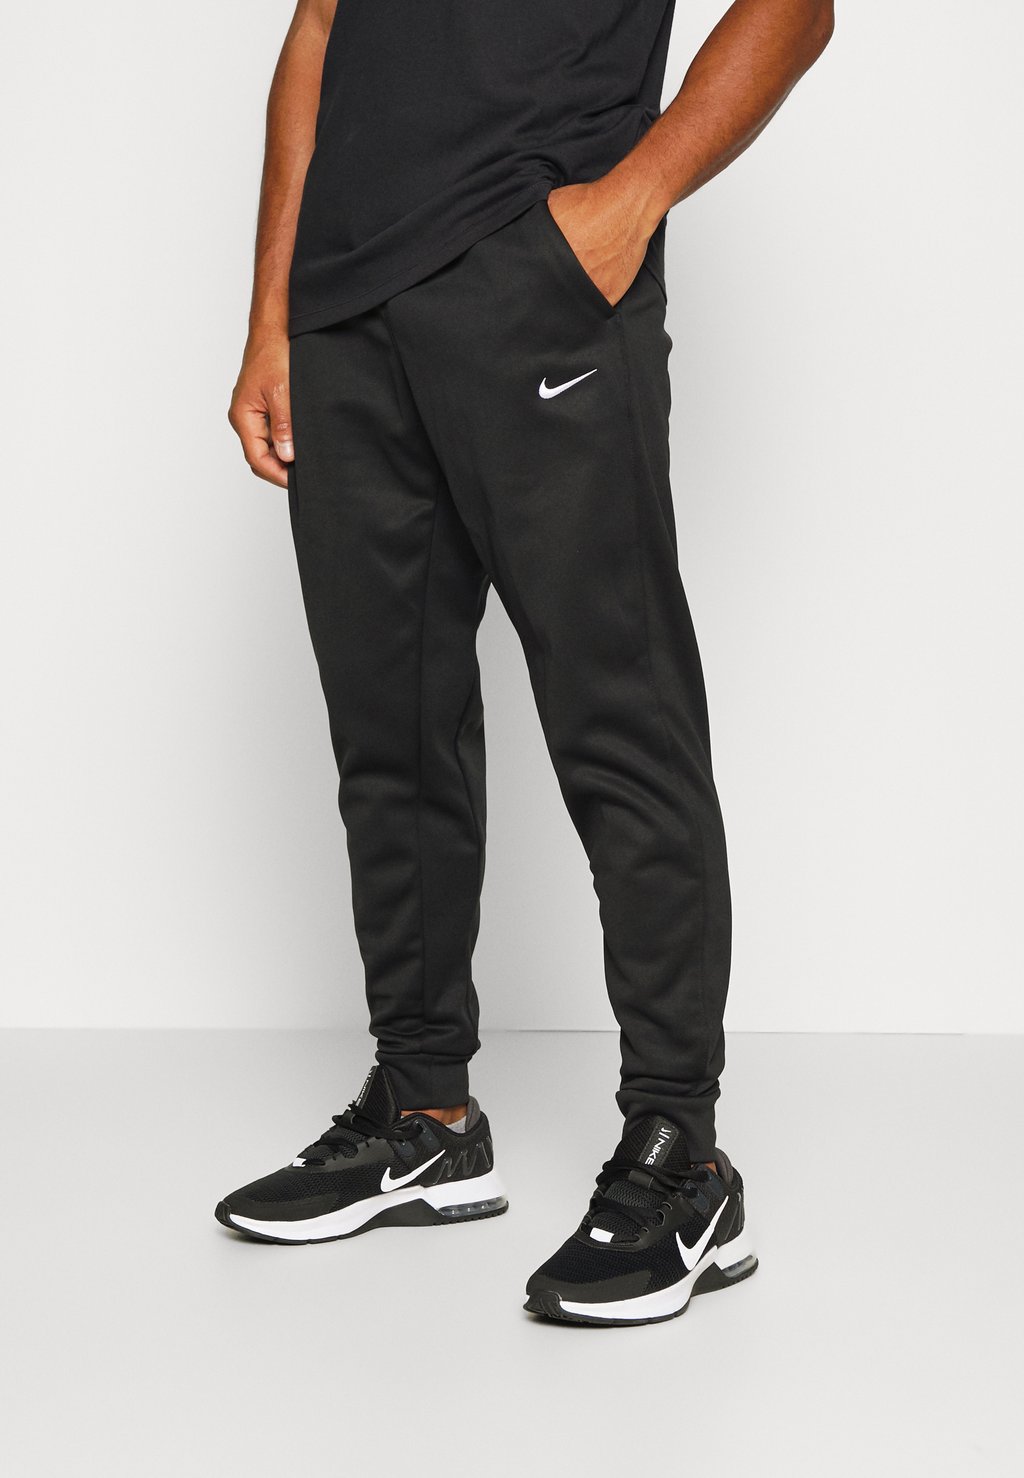 Спортивные брюки PANT TAPER Nike, черный/белый спортивные брюки pant taper energy nike цвет oil green sea glass